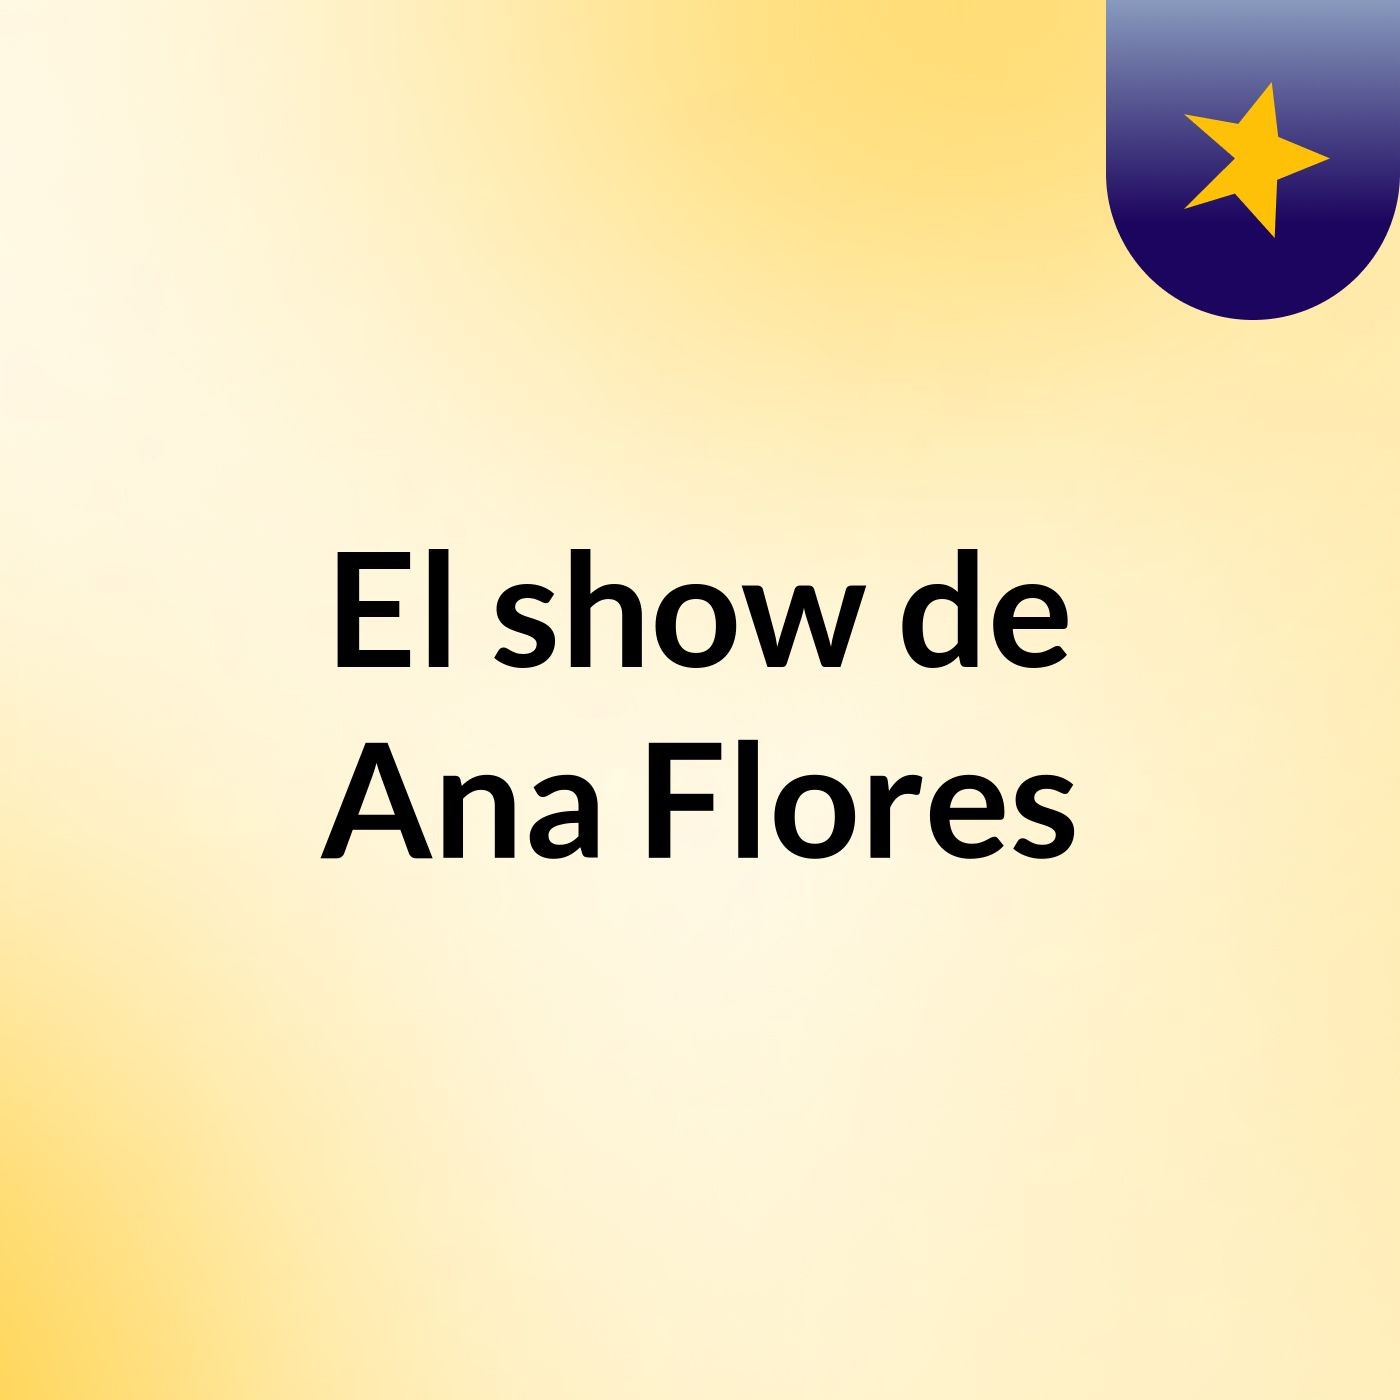 Episodio 2 - El show de Ana Flores